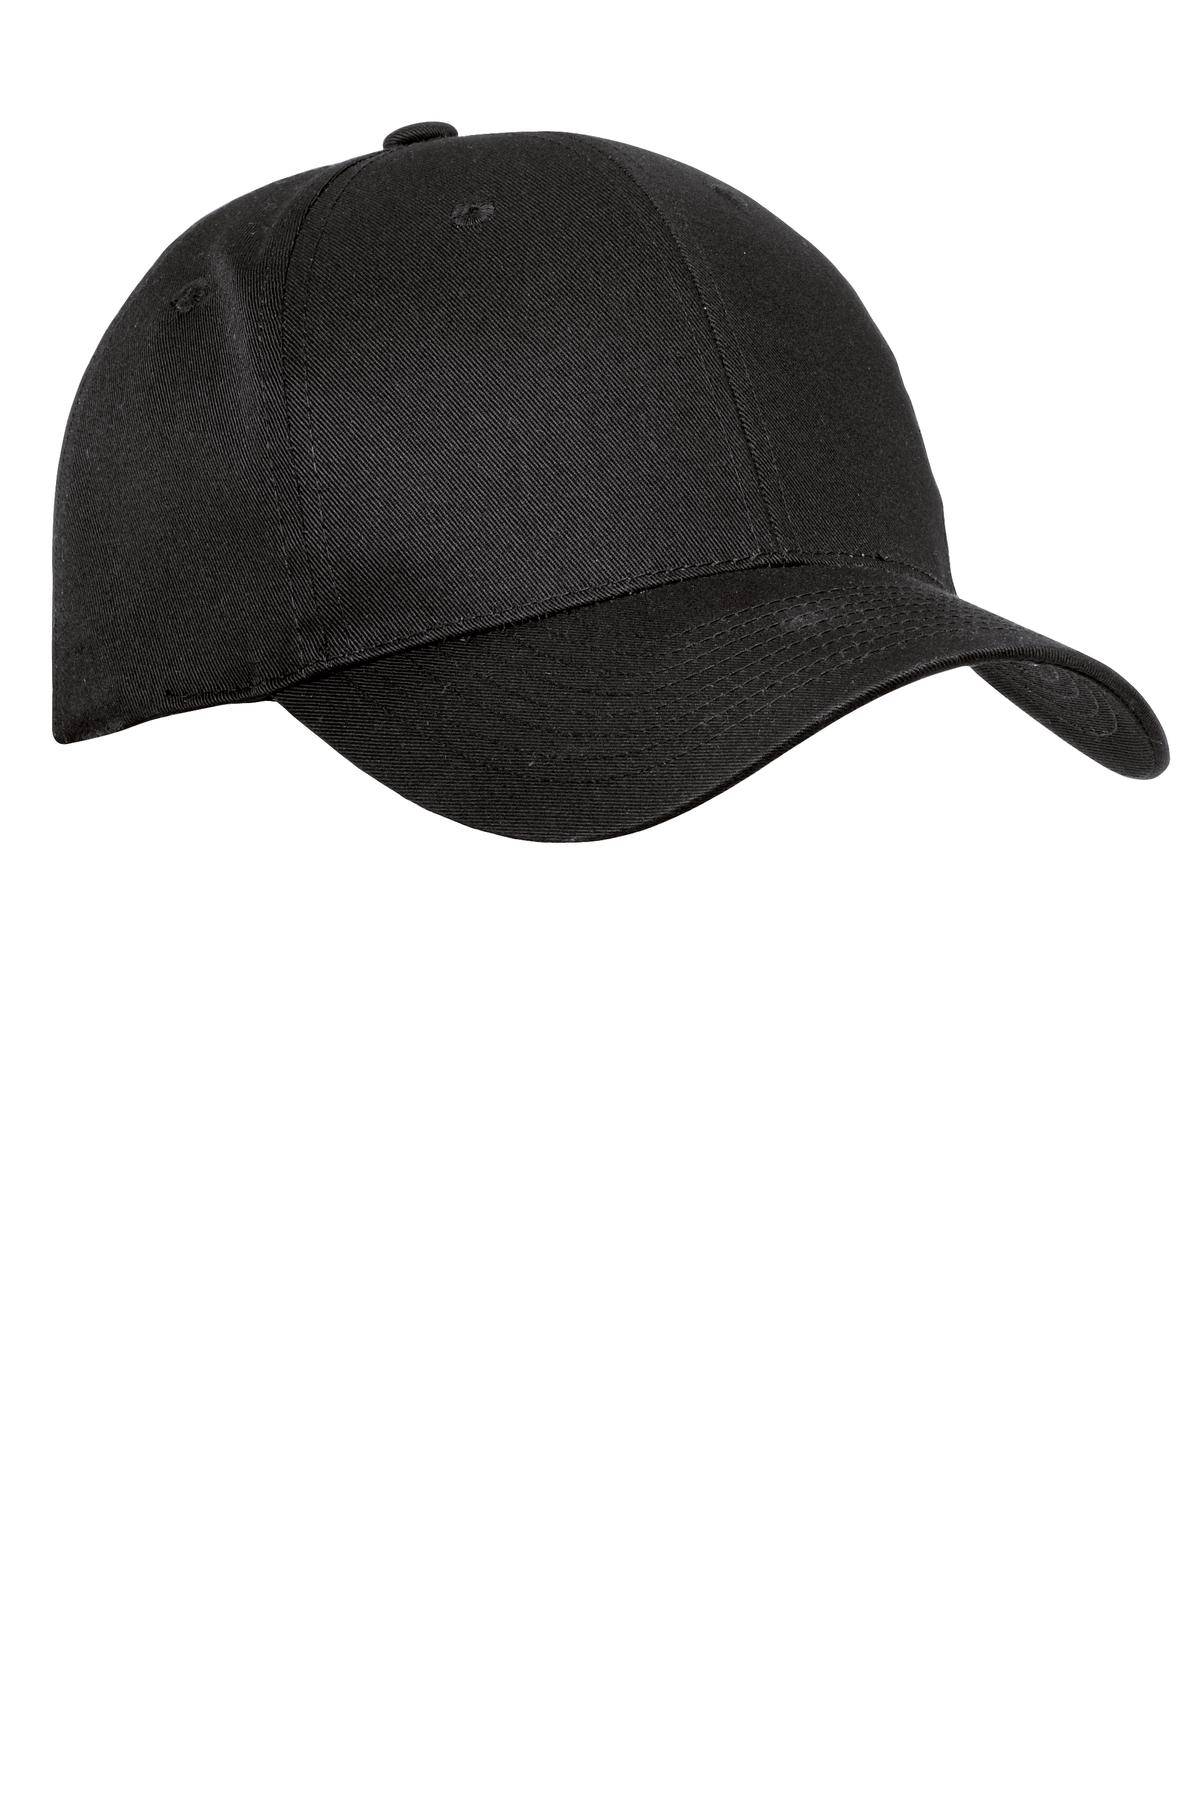 C Black hat GA